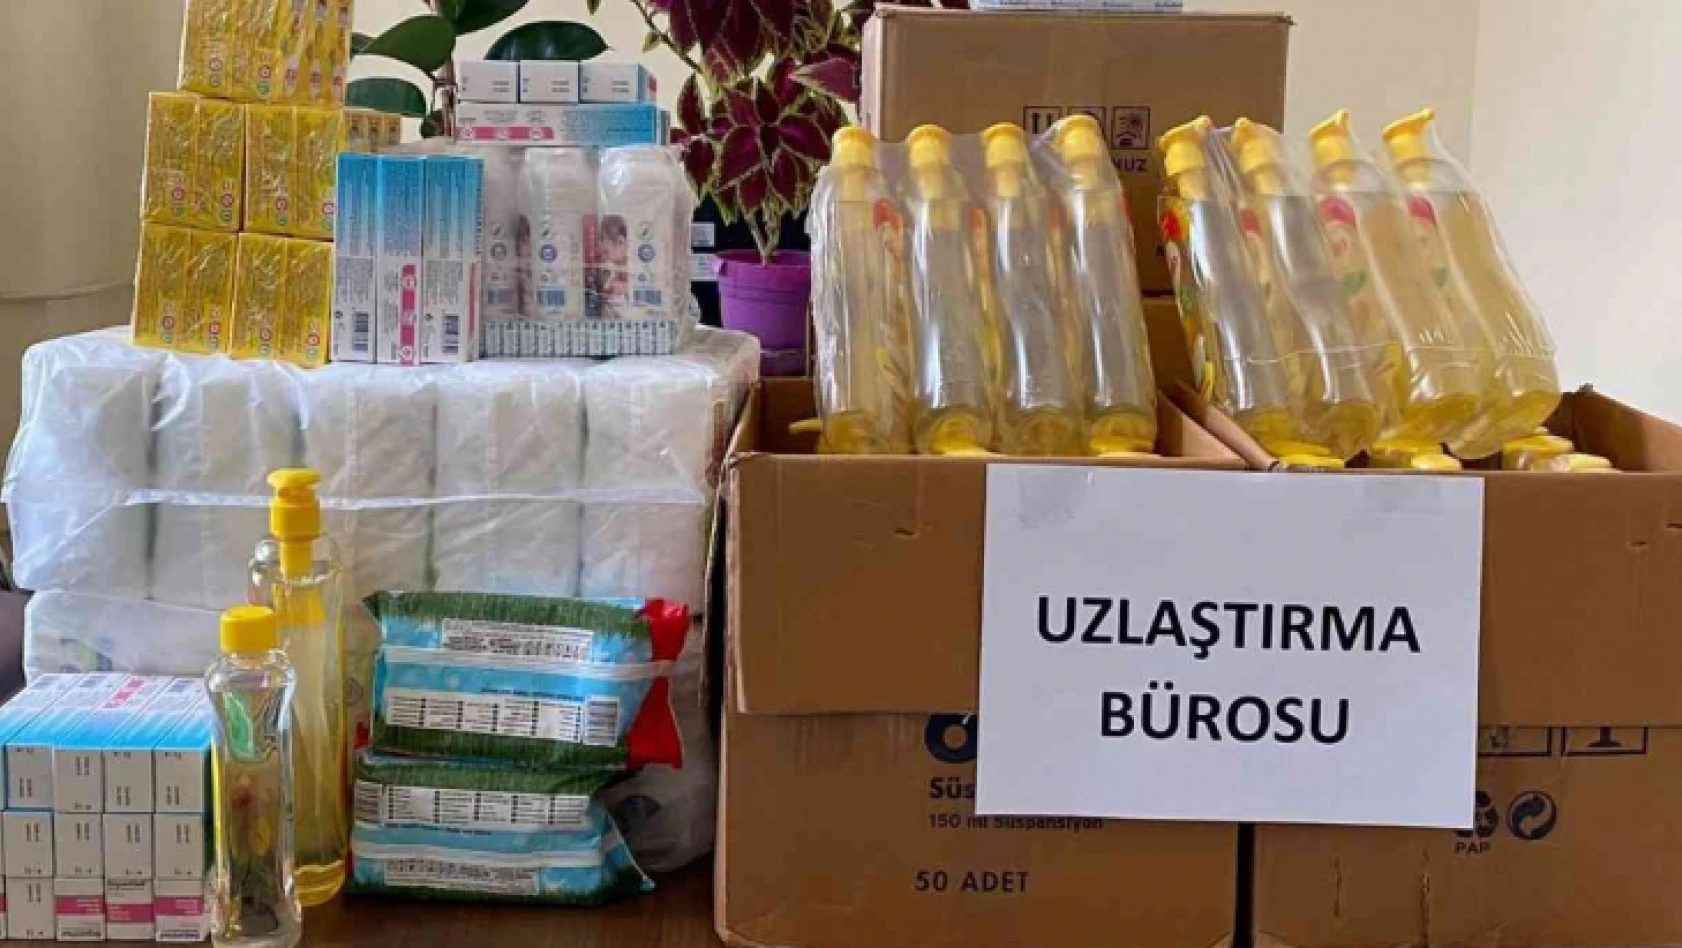 Elazığ'da Uzlaştırma Bürosu sayesinde çocukların ihtiyaçları karşılandı